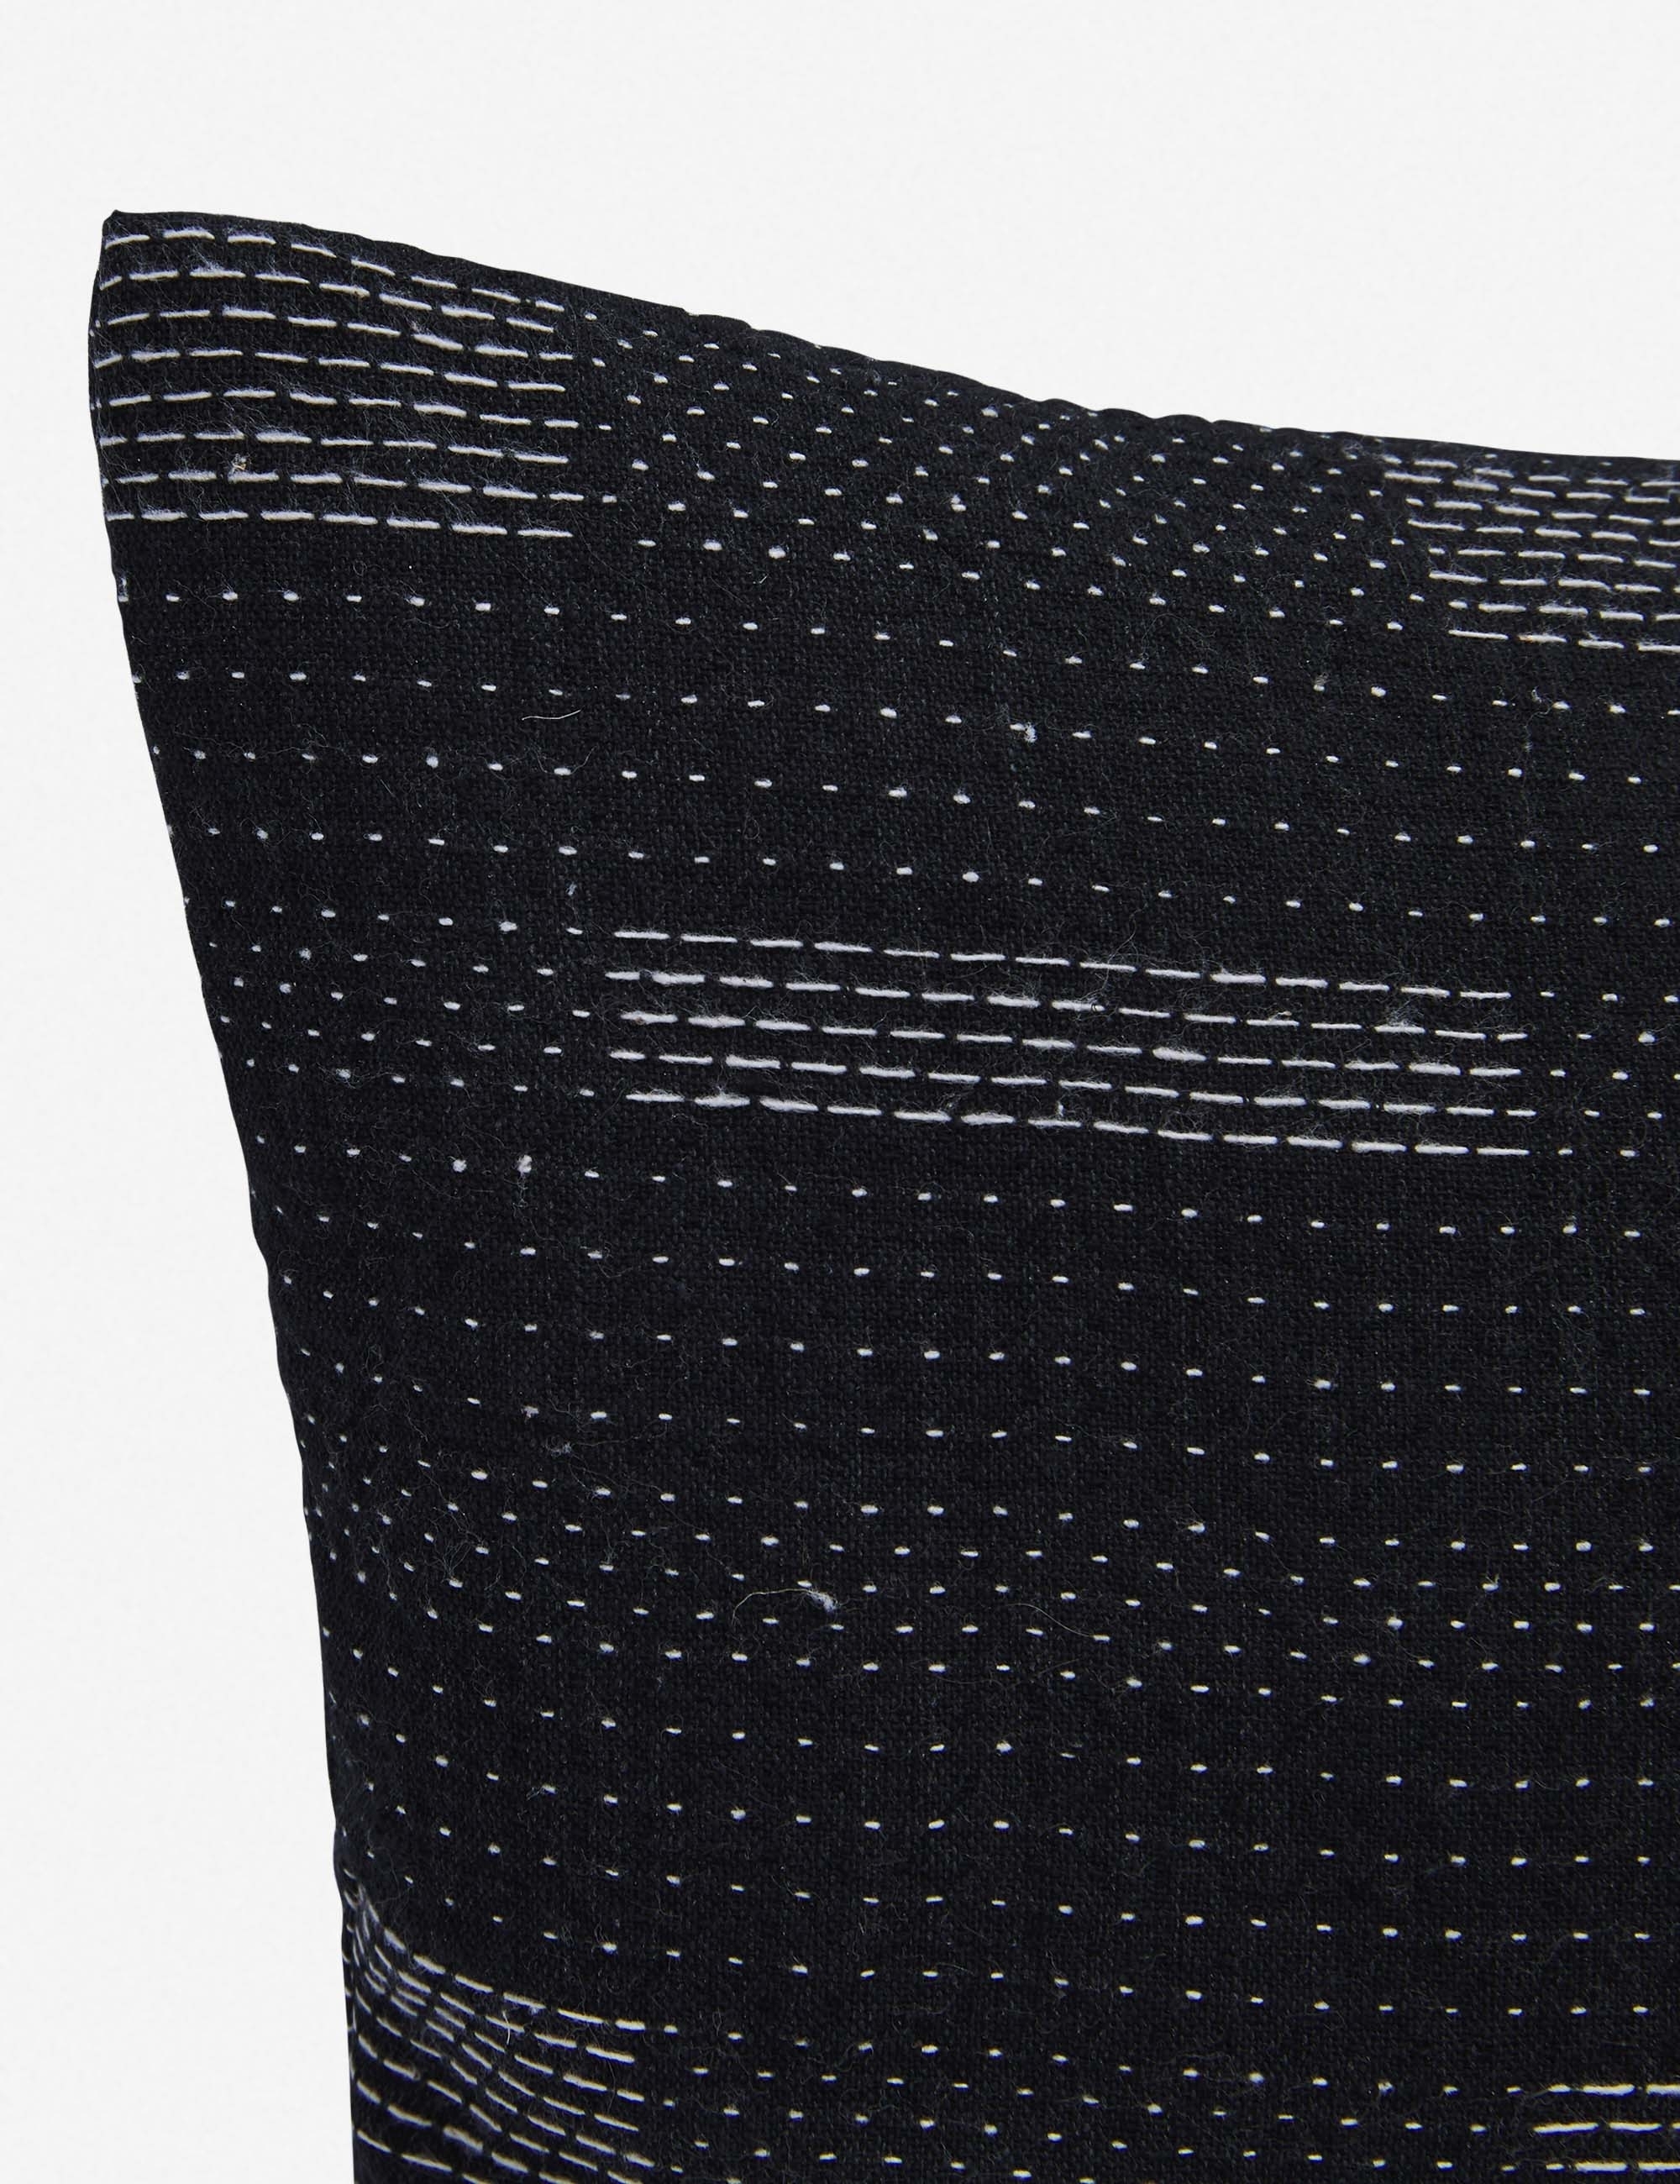 Kimora Lumbar Pillow, Black, 18" x 12" - Image 1